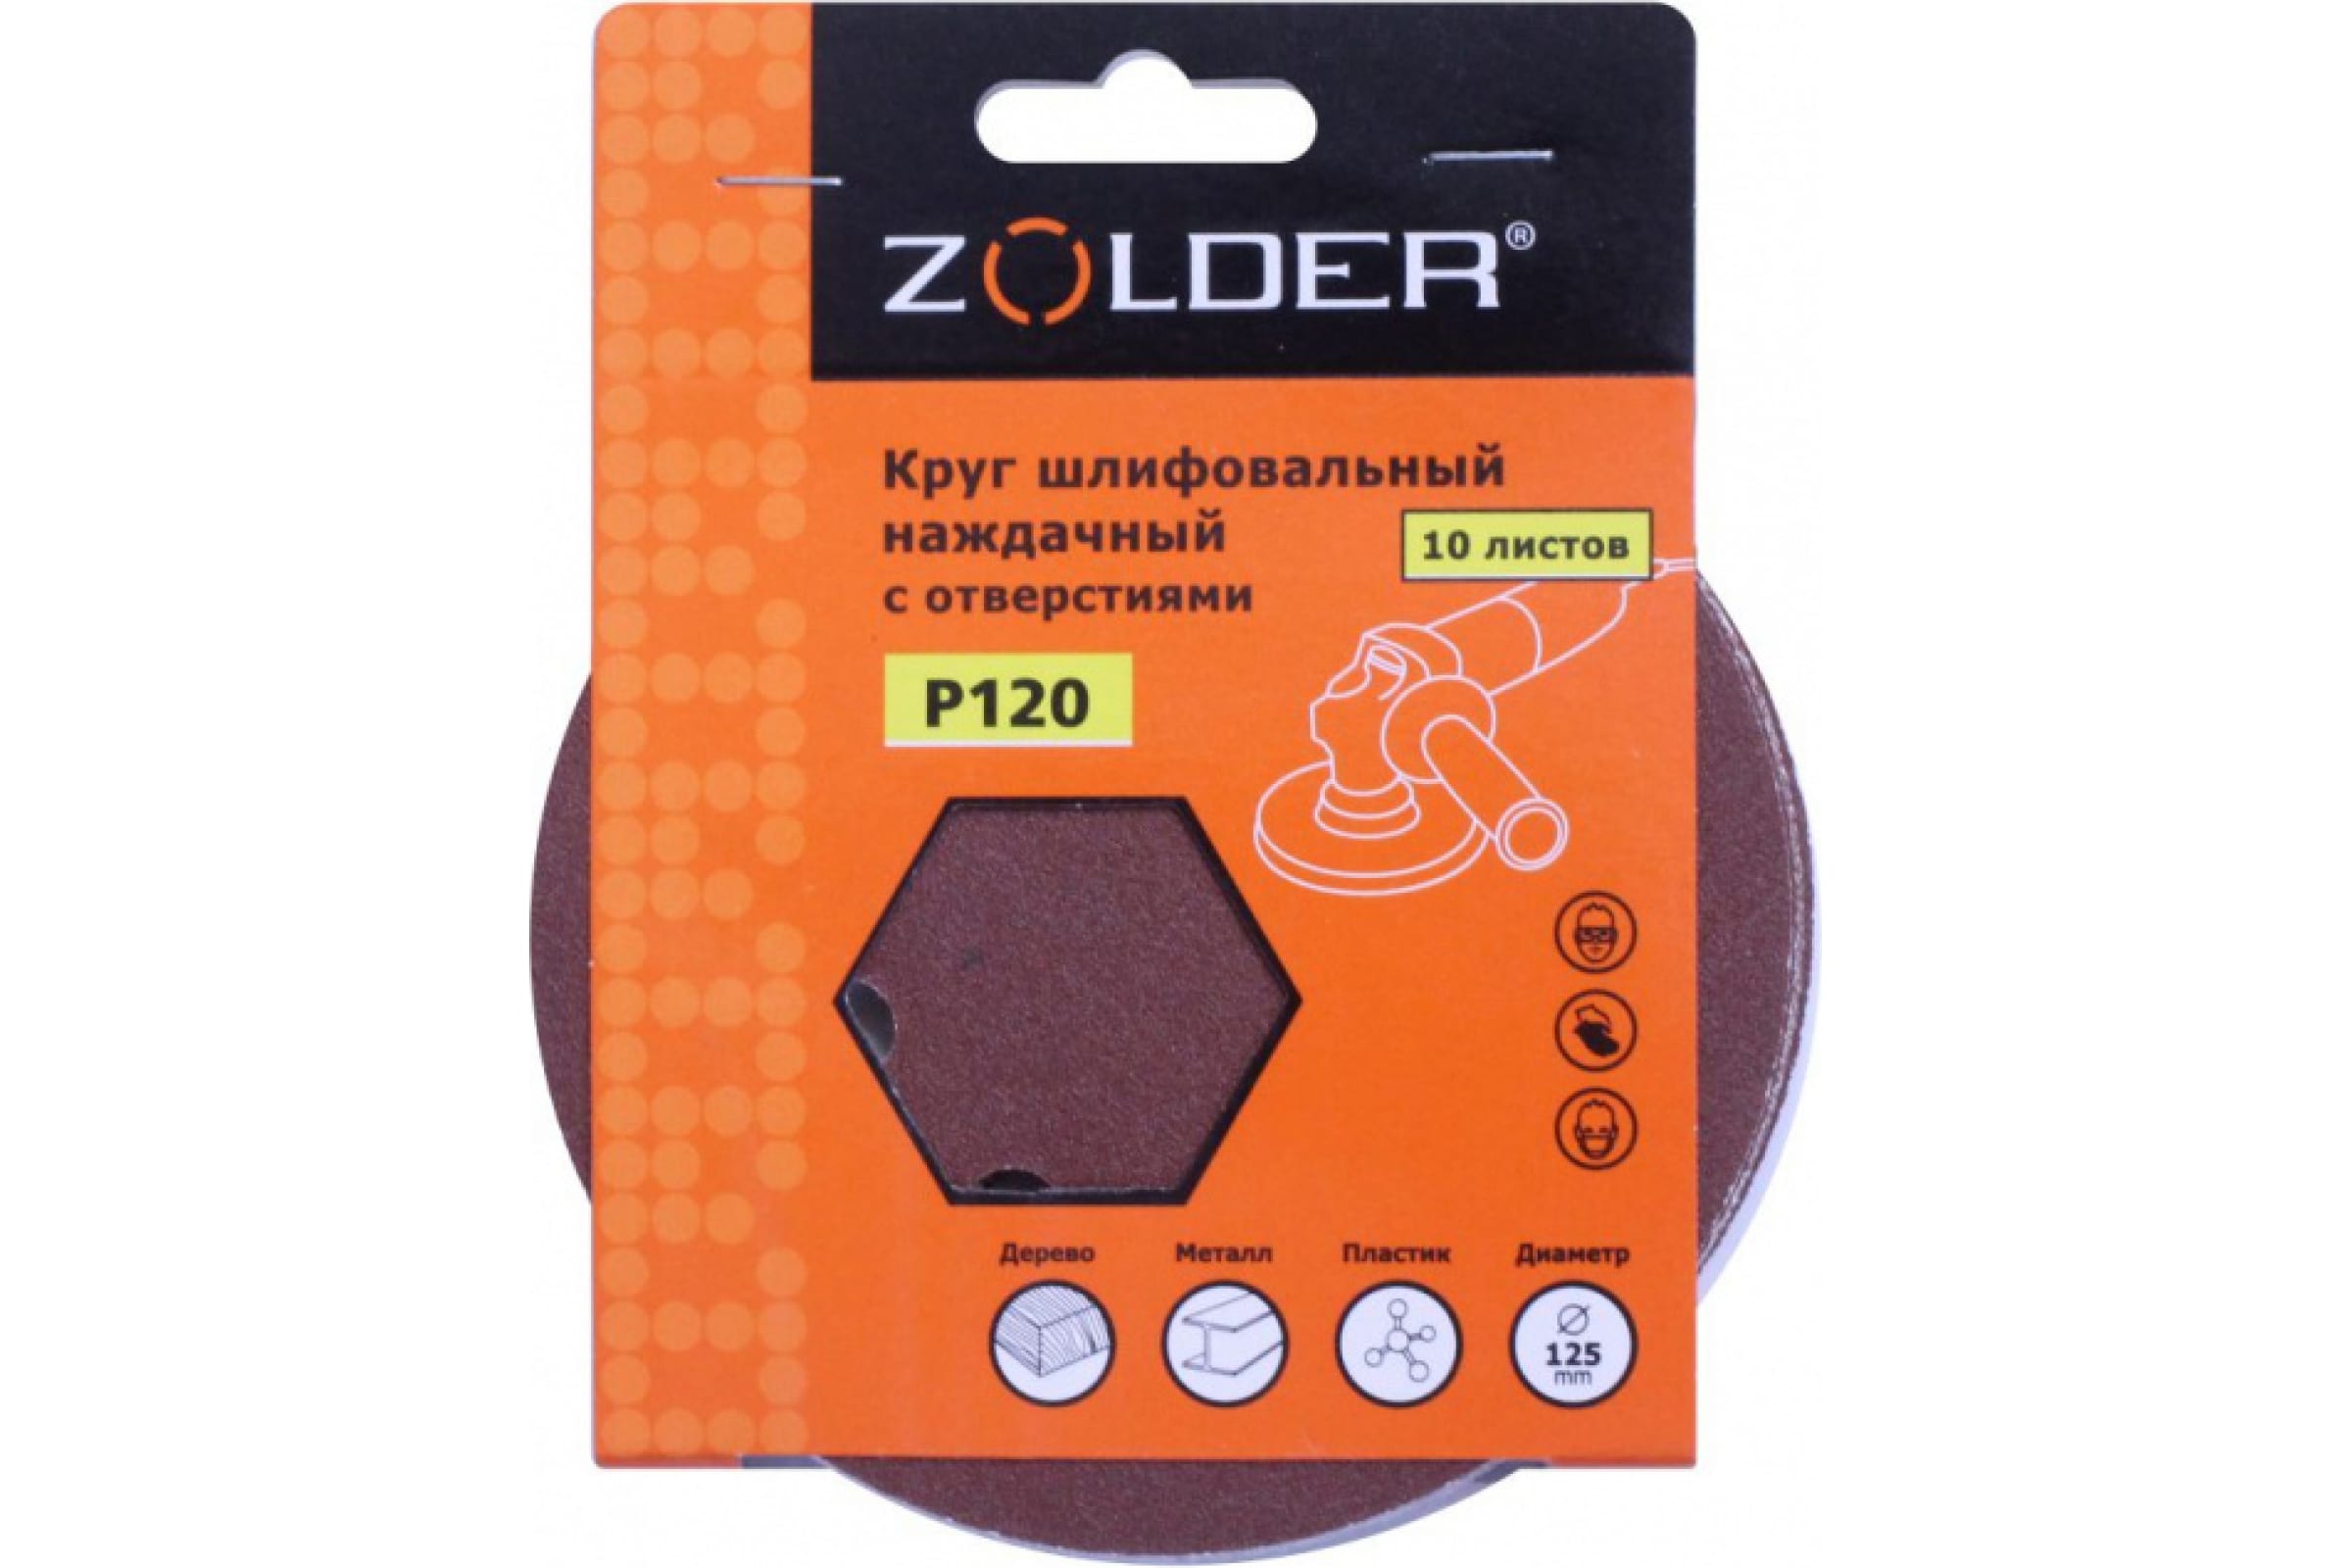 ZOLDER Круги шлифовальные наждачные 10шт/ P120, 125 мм, 8 отверстий, липучка / Z-108-1208 наждачные круги шлифовальные zolder